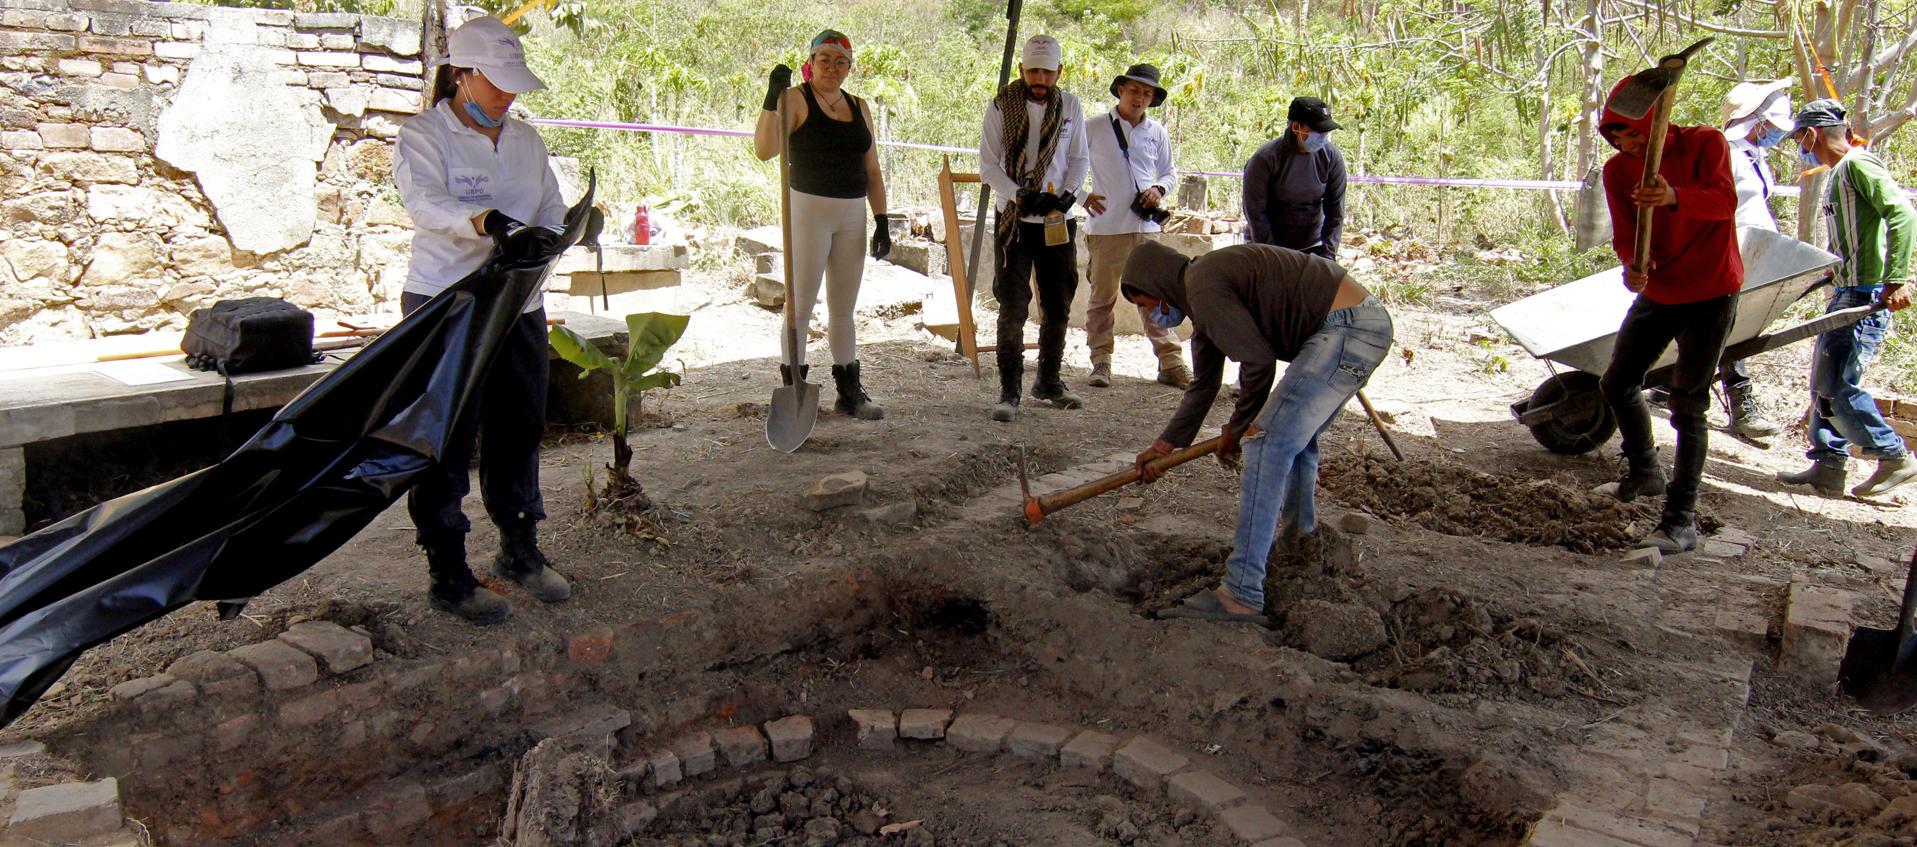 Unidad de Búsqueda buscando restos en hornos crematorios en zona rural de Cúcuta. 